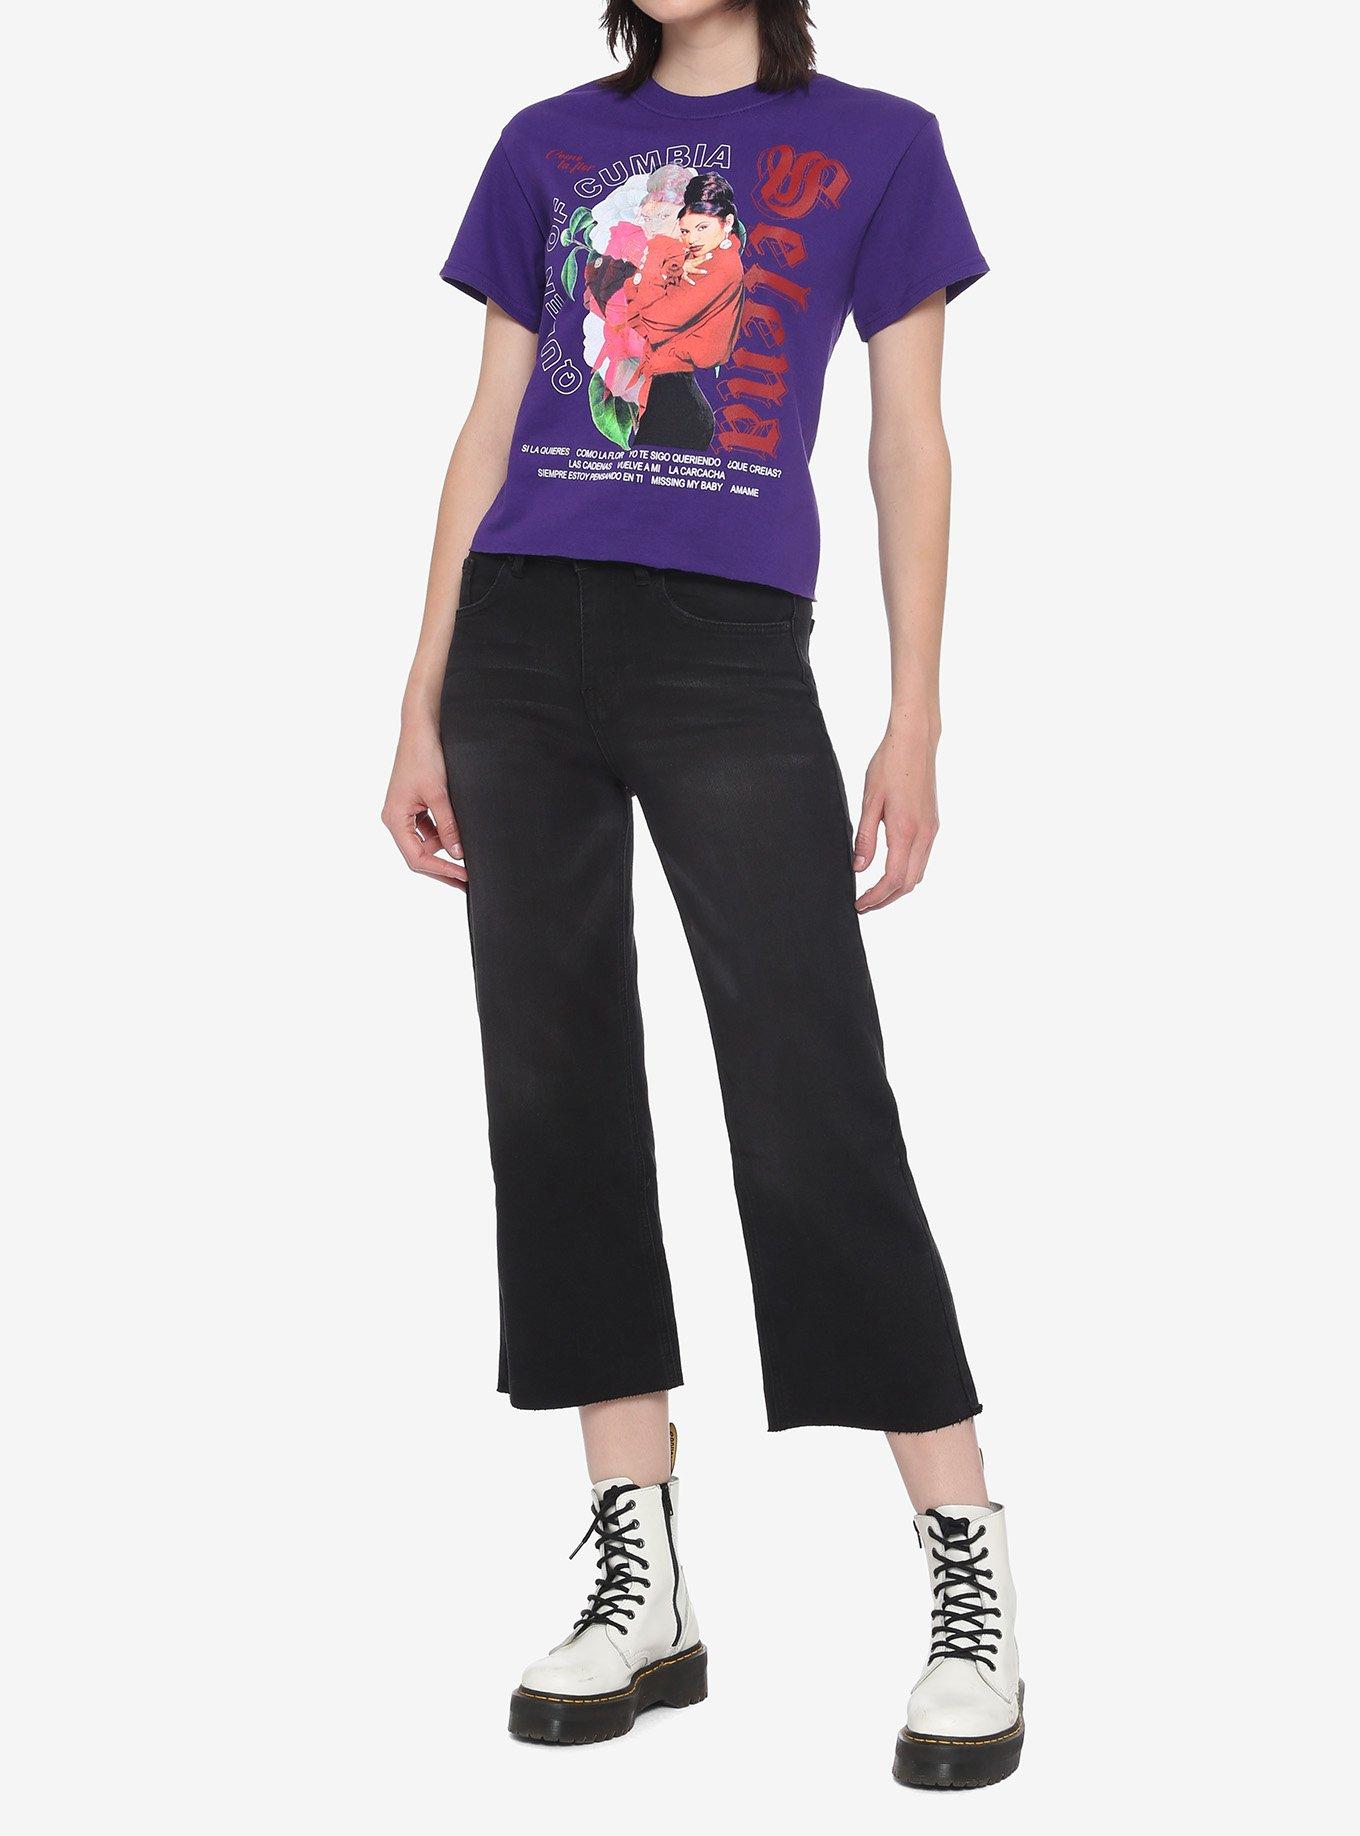 Selena Queen Of Cumbia Girls Crop T-Shirt, PURPLE, alternate